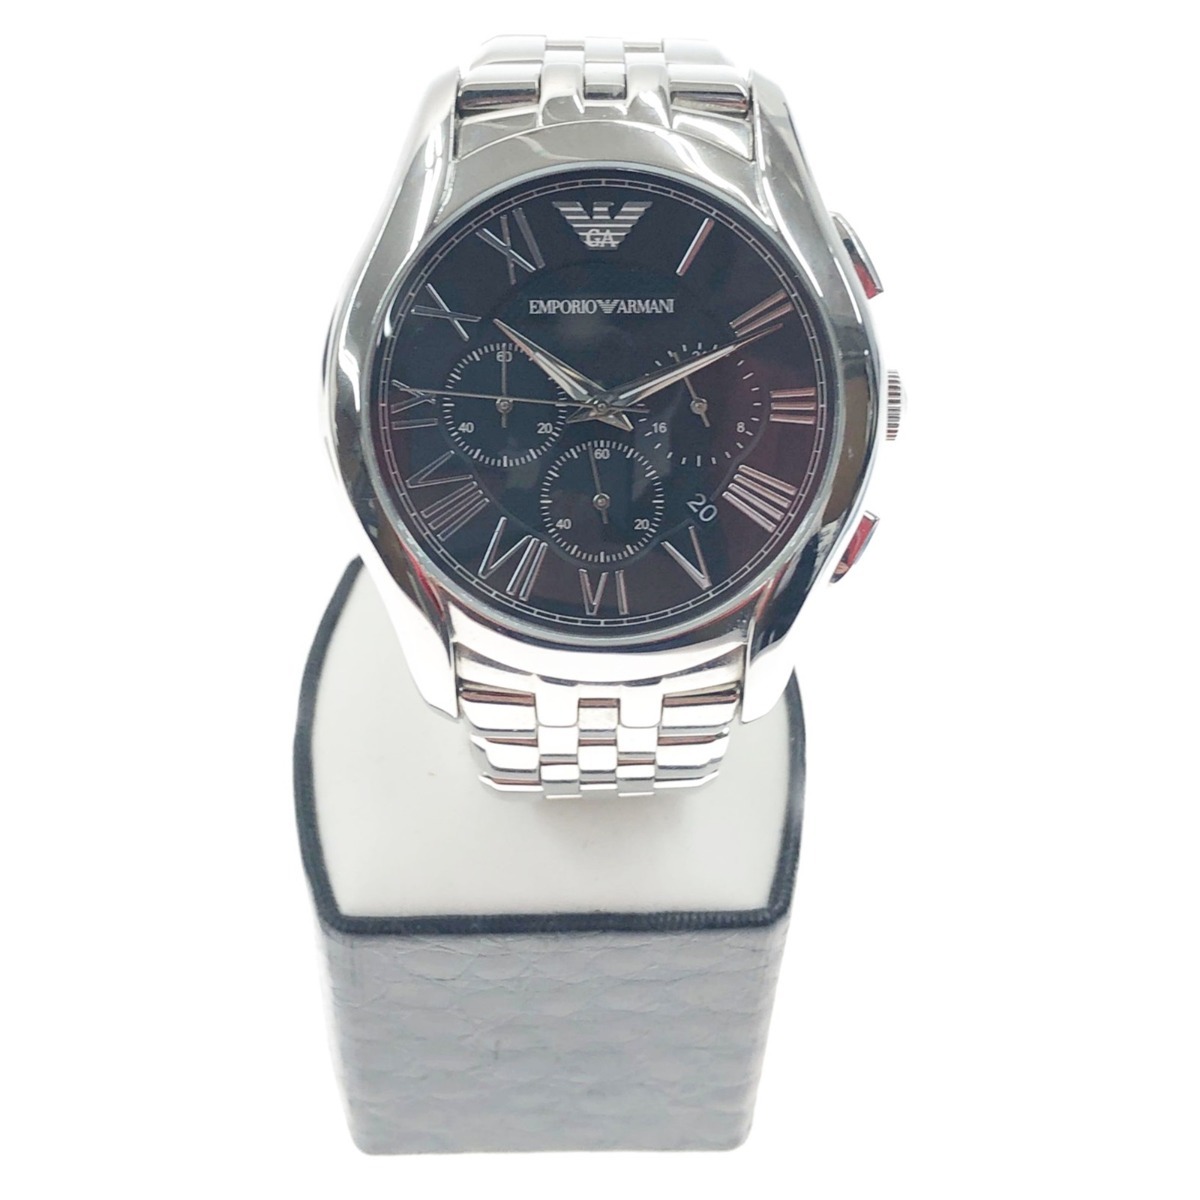 〇〇 ENPORIO ARMANI クロノグラフ 腕時計 AR-1786 シルバー x ブラック やや傷や汚れあり